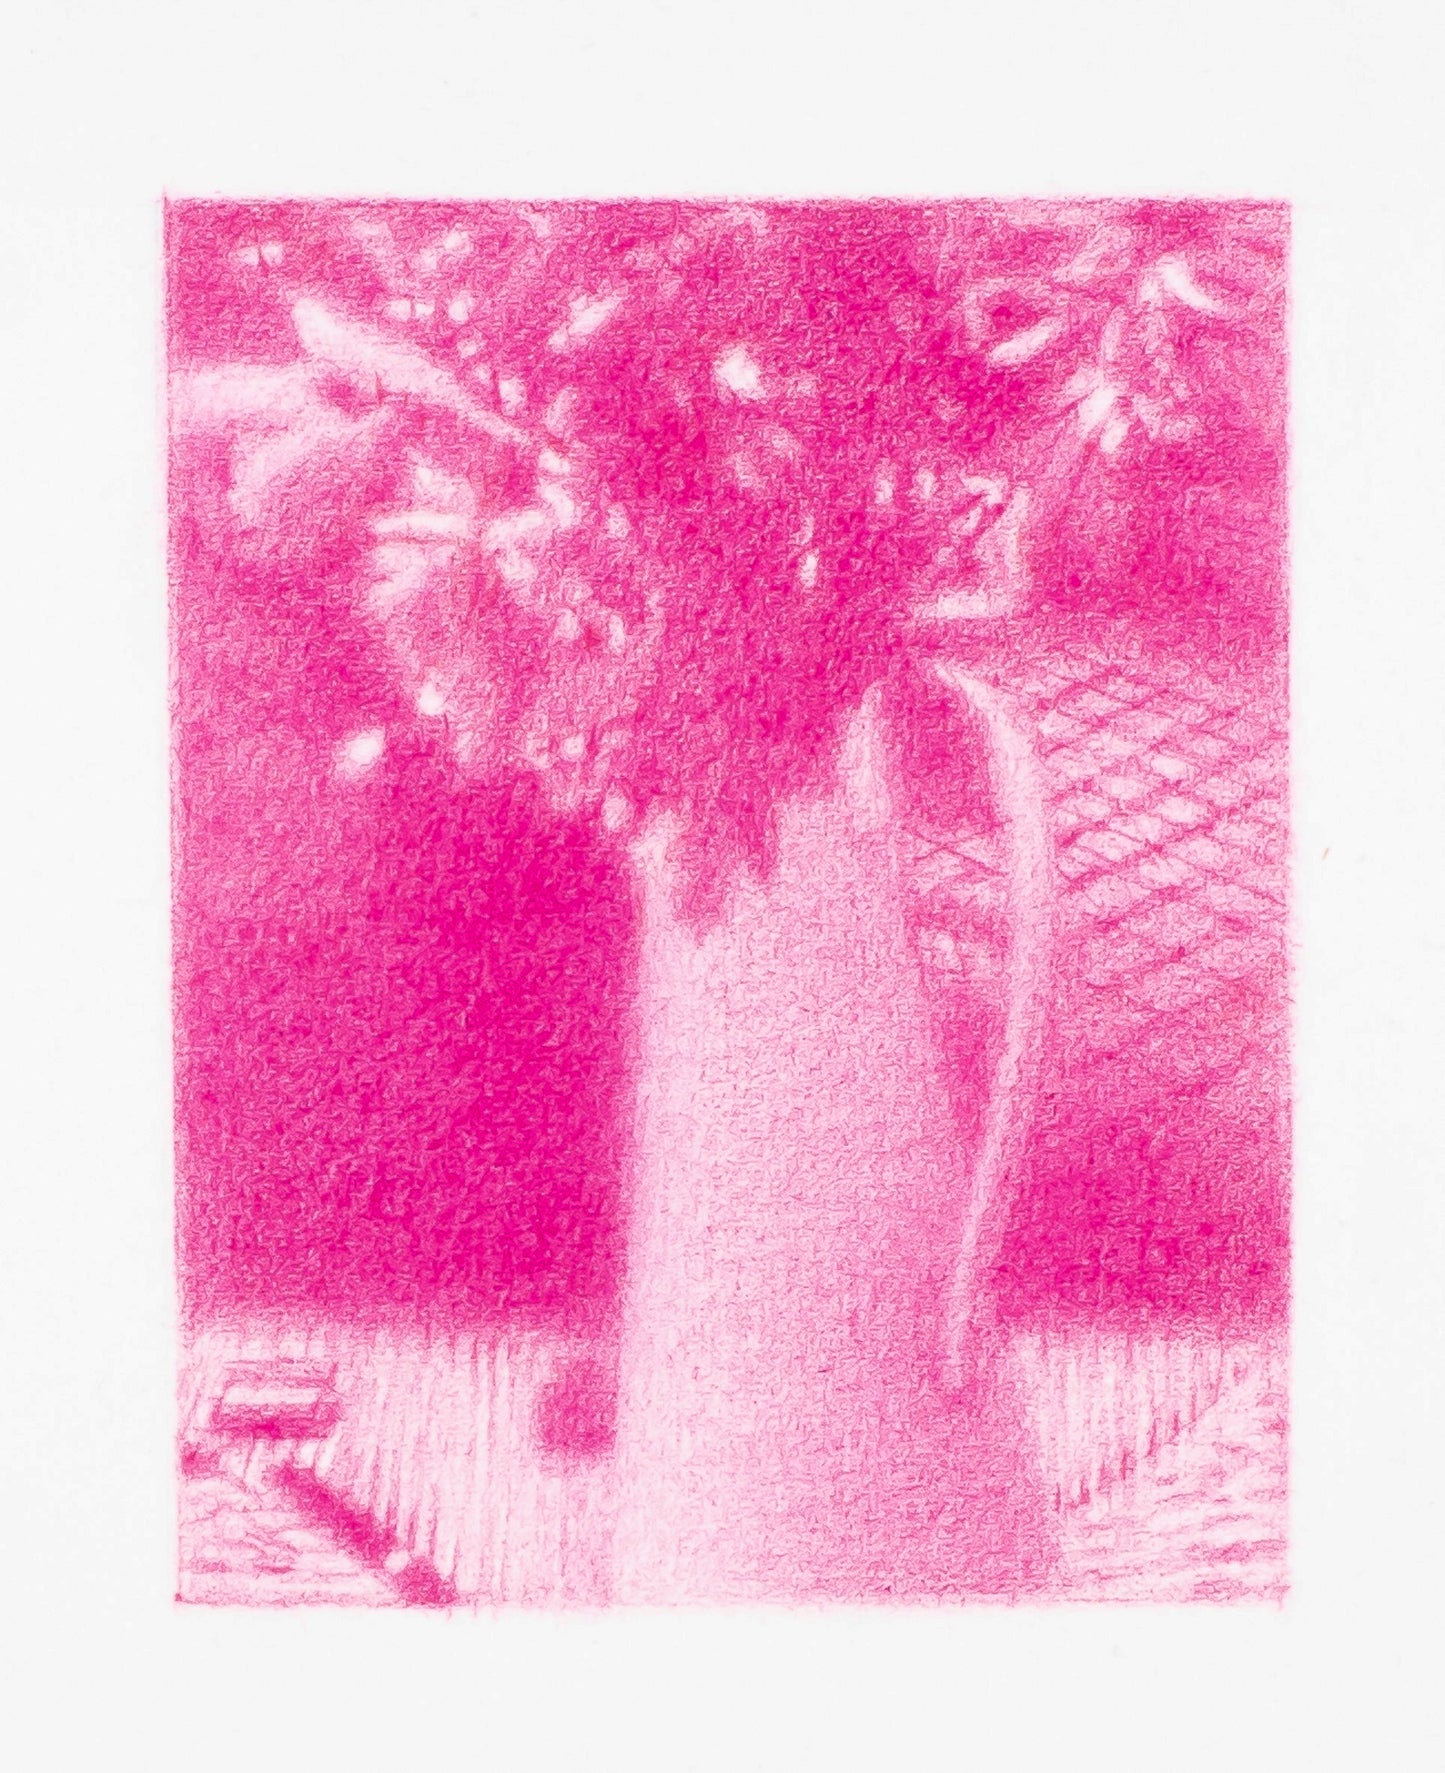 Flowers in Matisse's studio (Paris), 2020